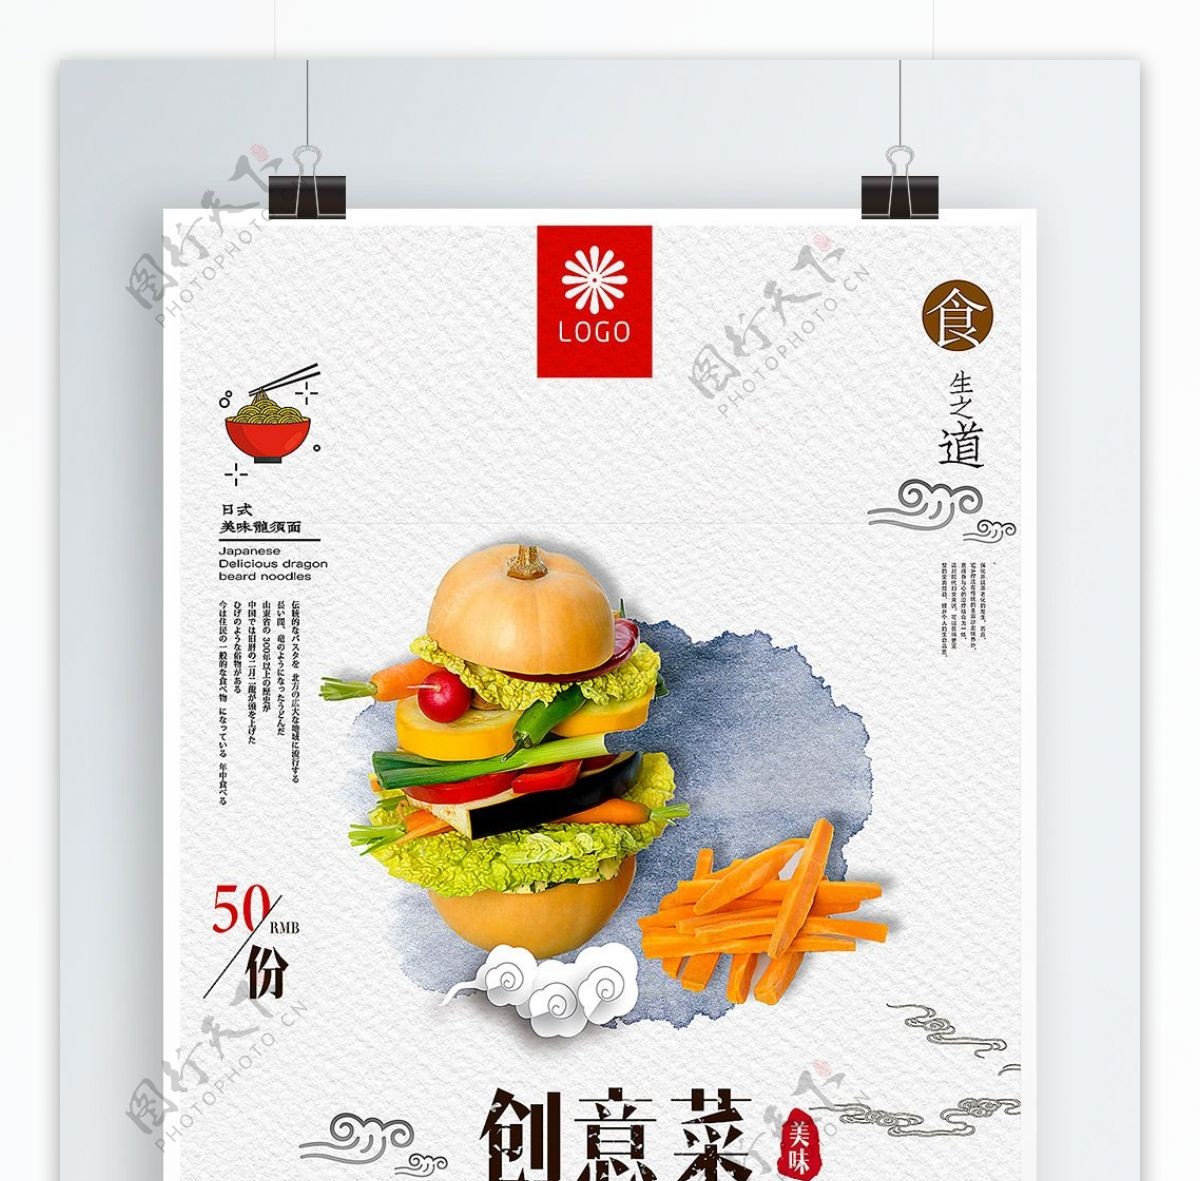 中国风创意菜餐厅宣传美食海报设计